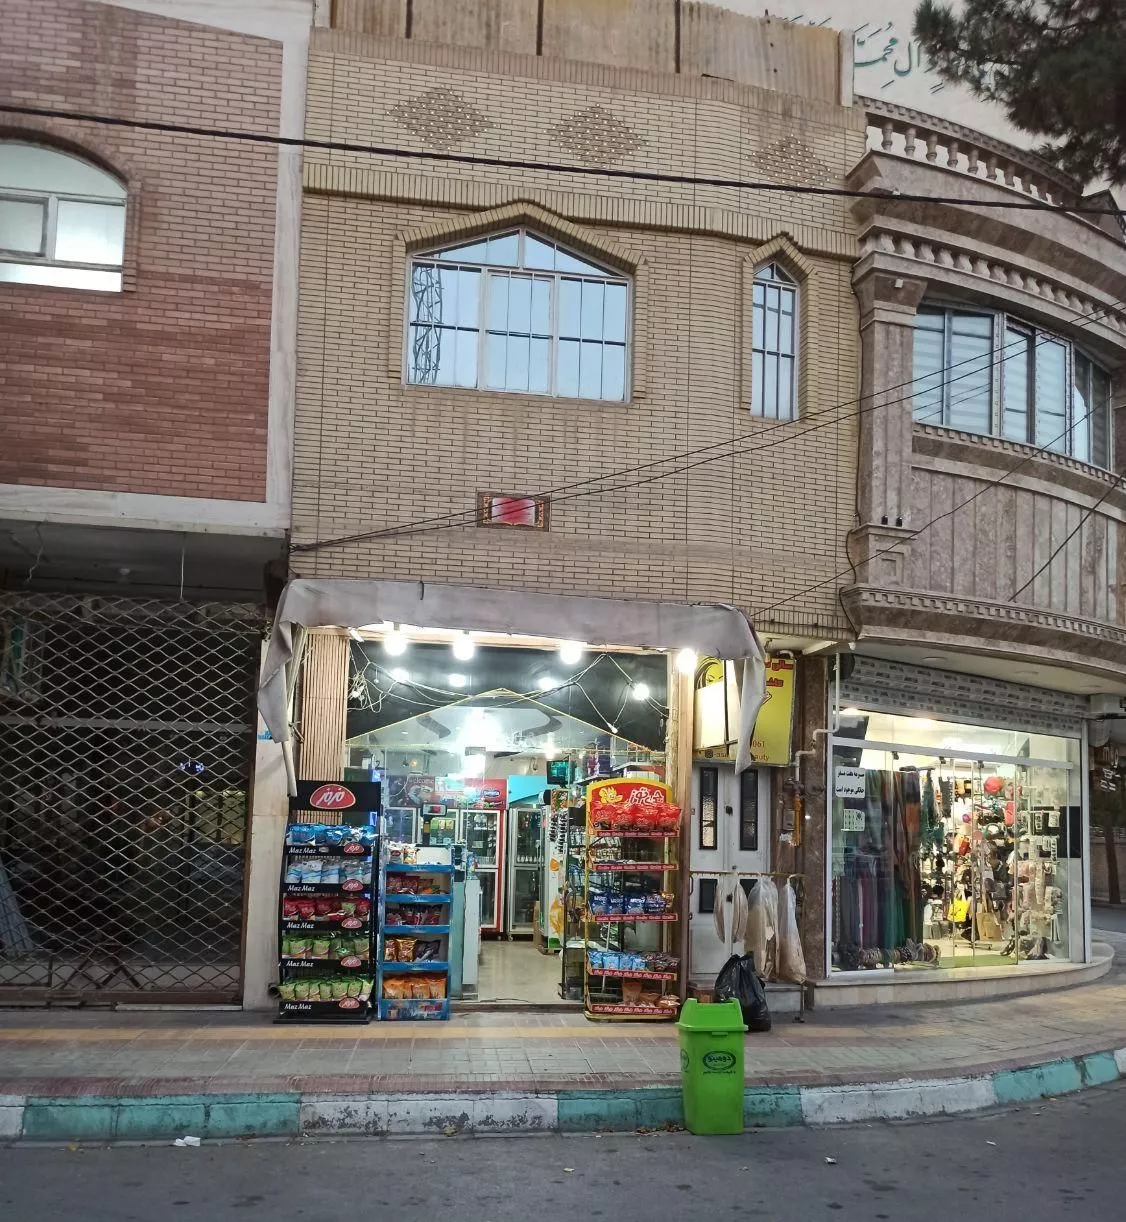 فروش یا معاوضه مغازه دوطبقه در ویلاشهر